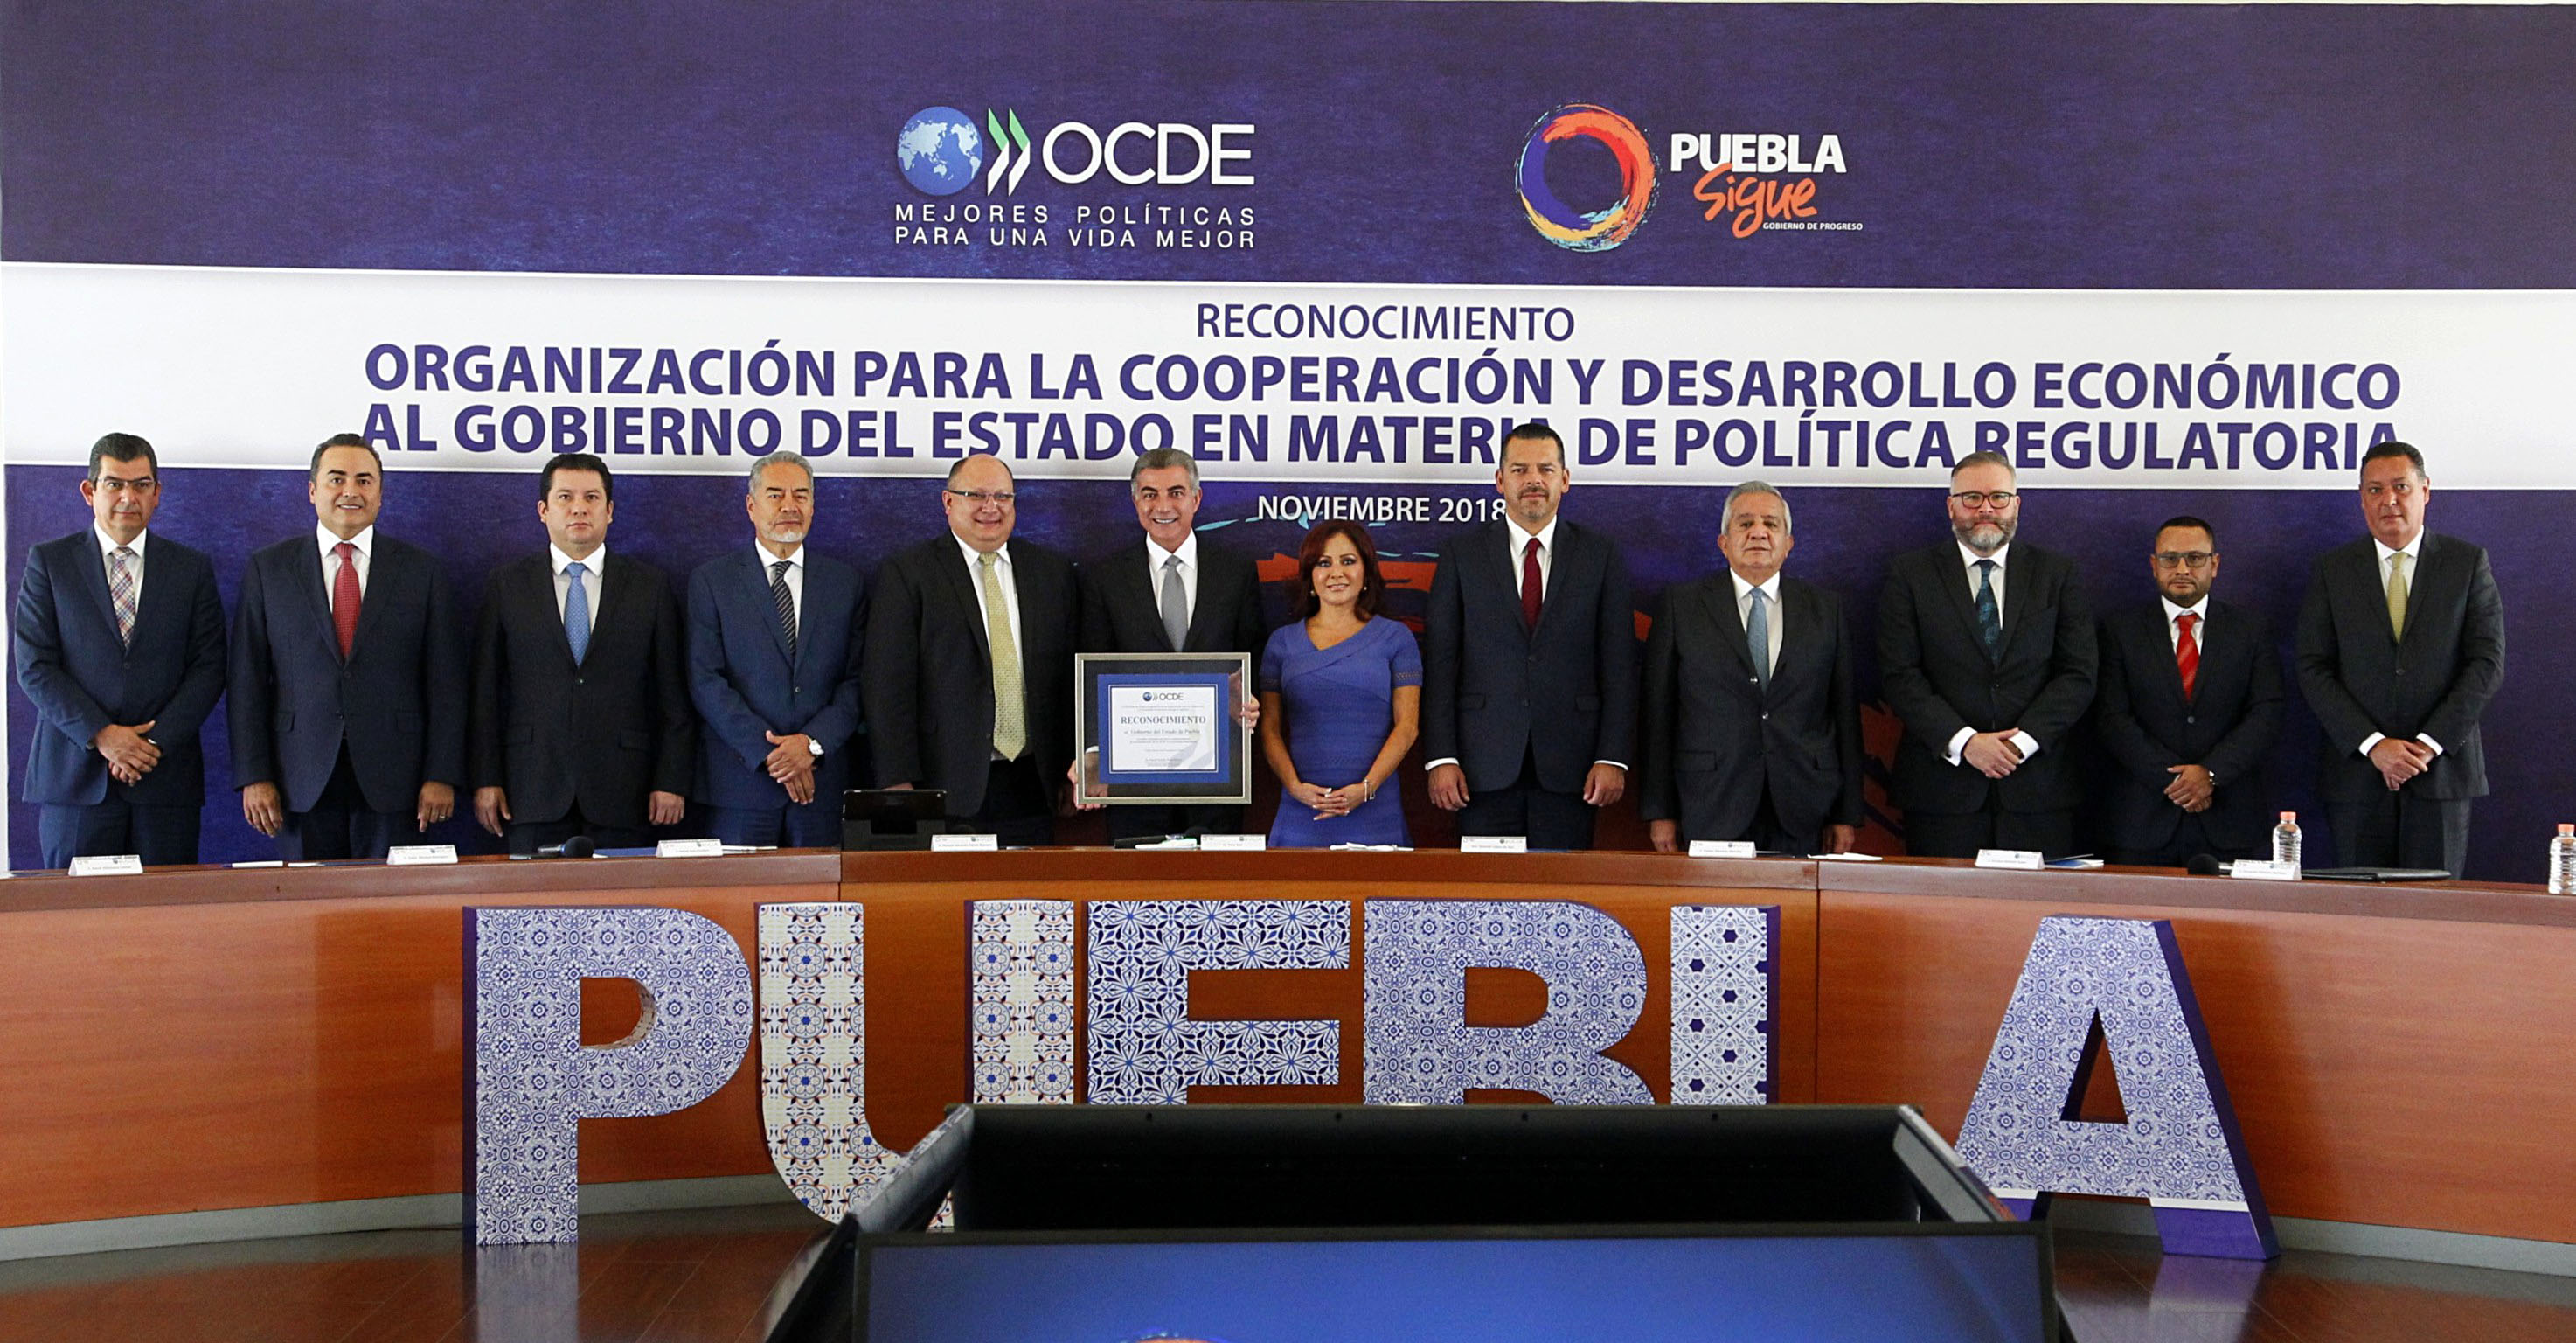 OCDE reconoce a Puebla en materia de política regulatoria